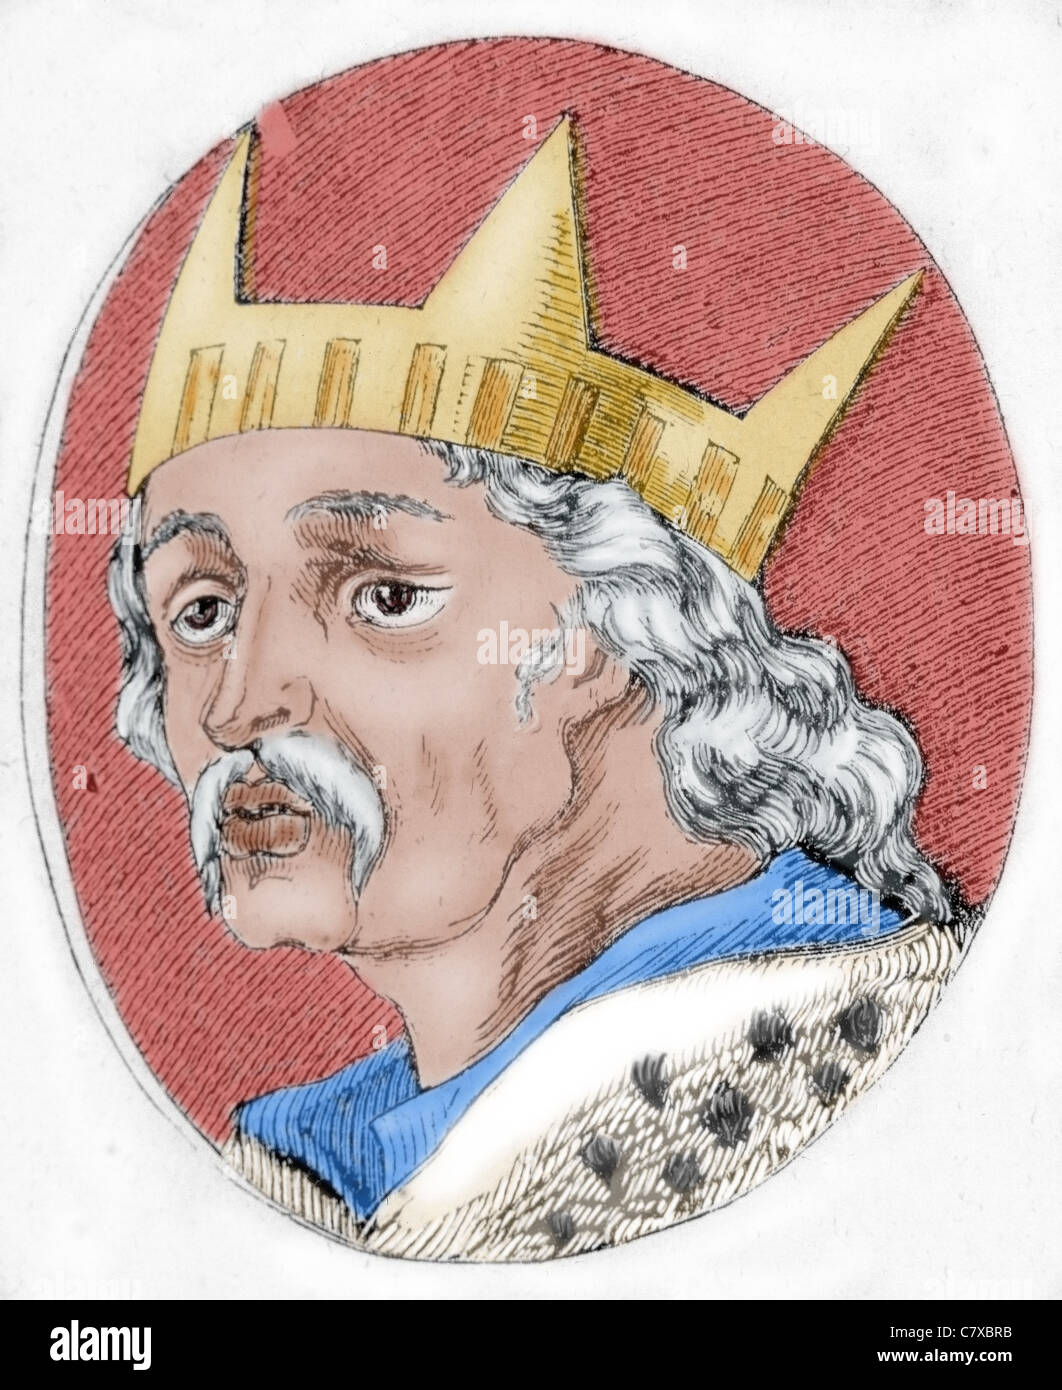 Alfonso VI (1040-1109), il coraggioso. Re di León dal 1065, Re di Castiglia e León de facto re di Galizia dal 1072. Foto Stock